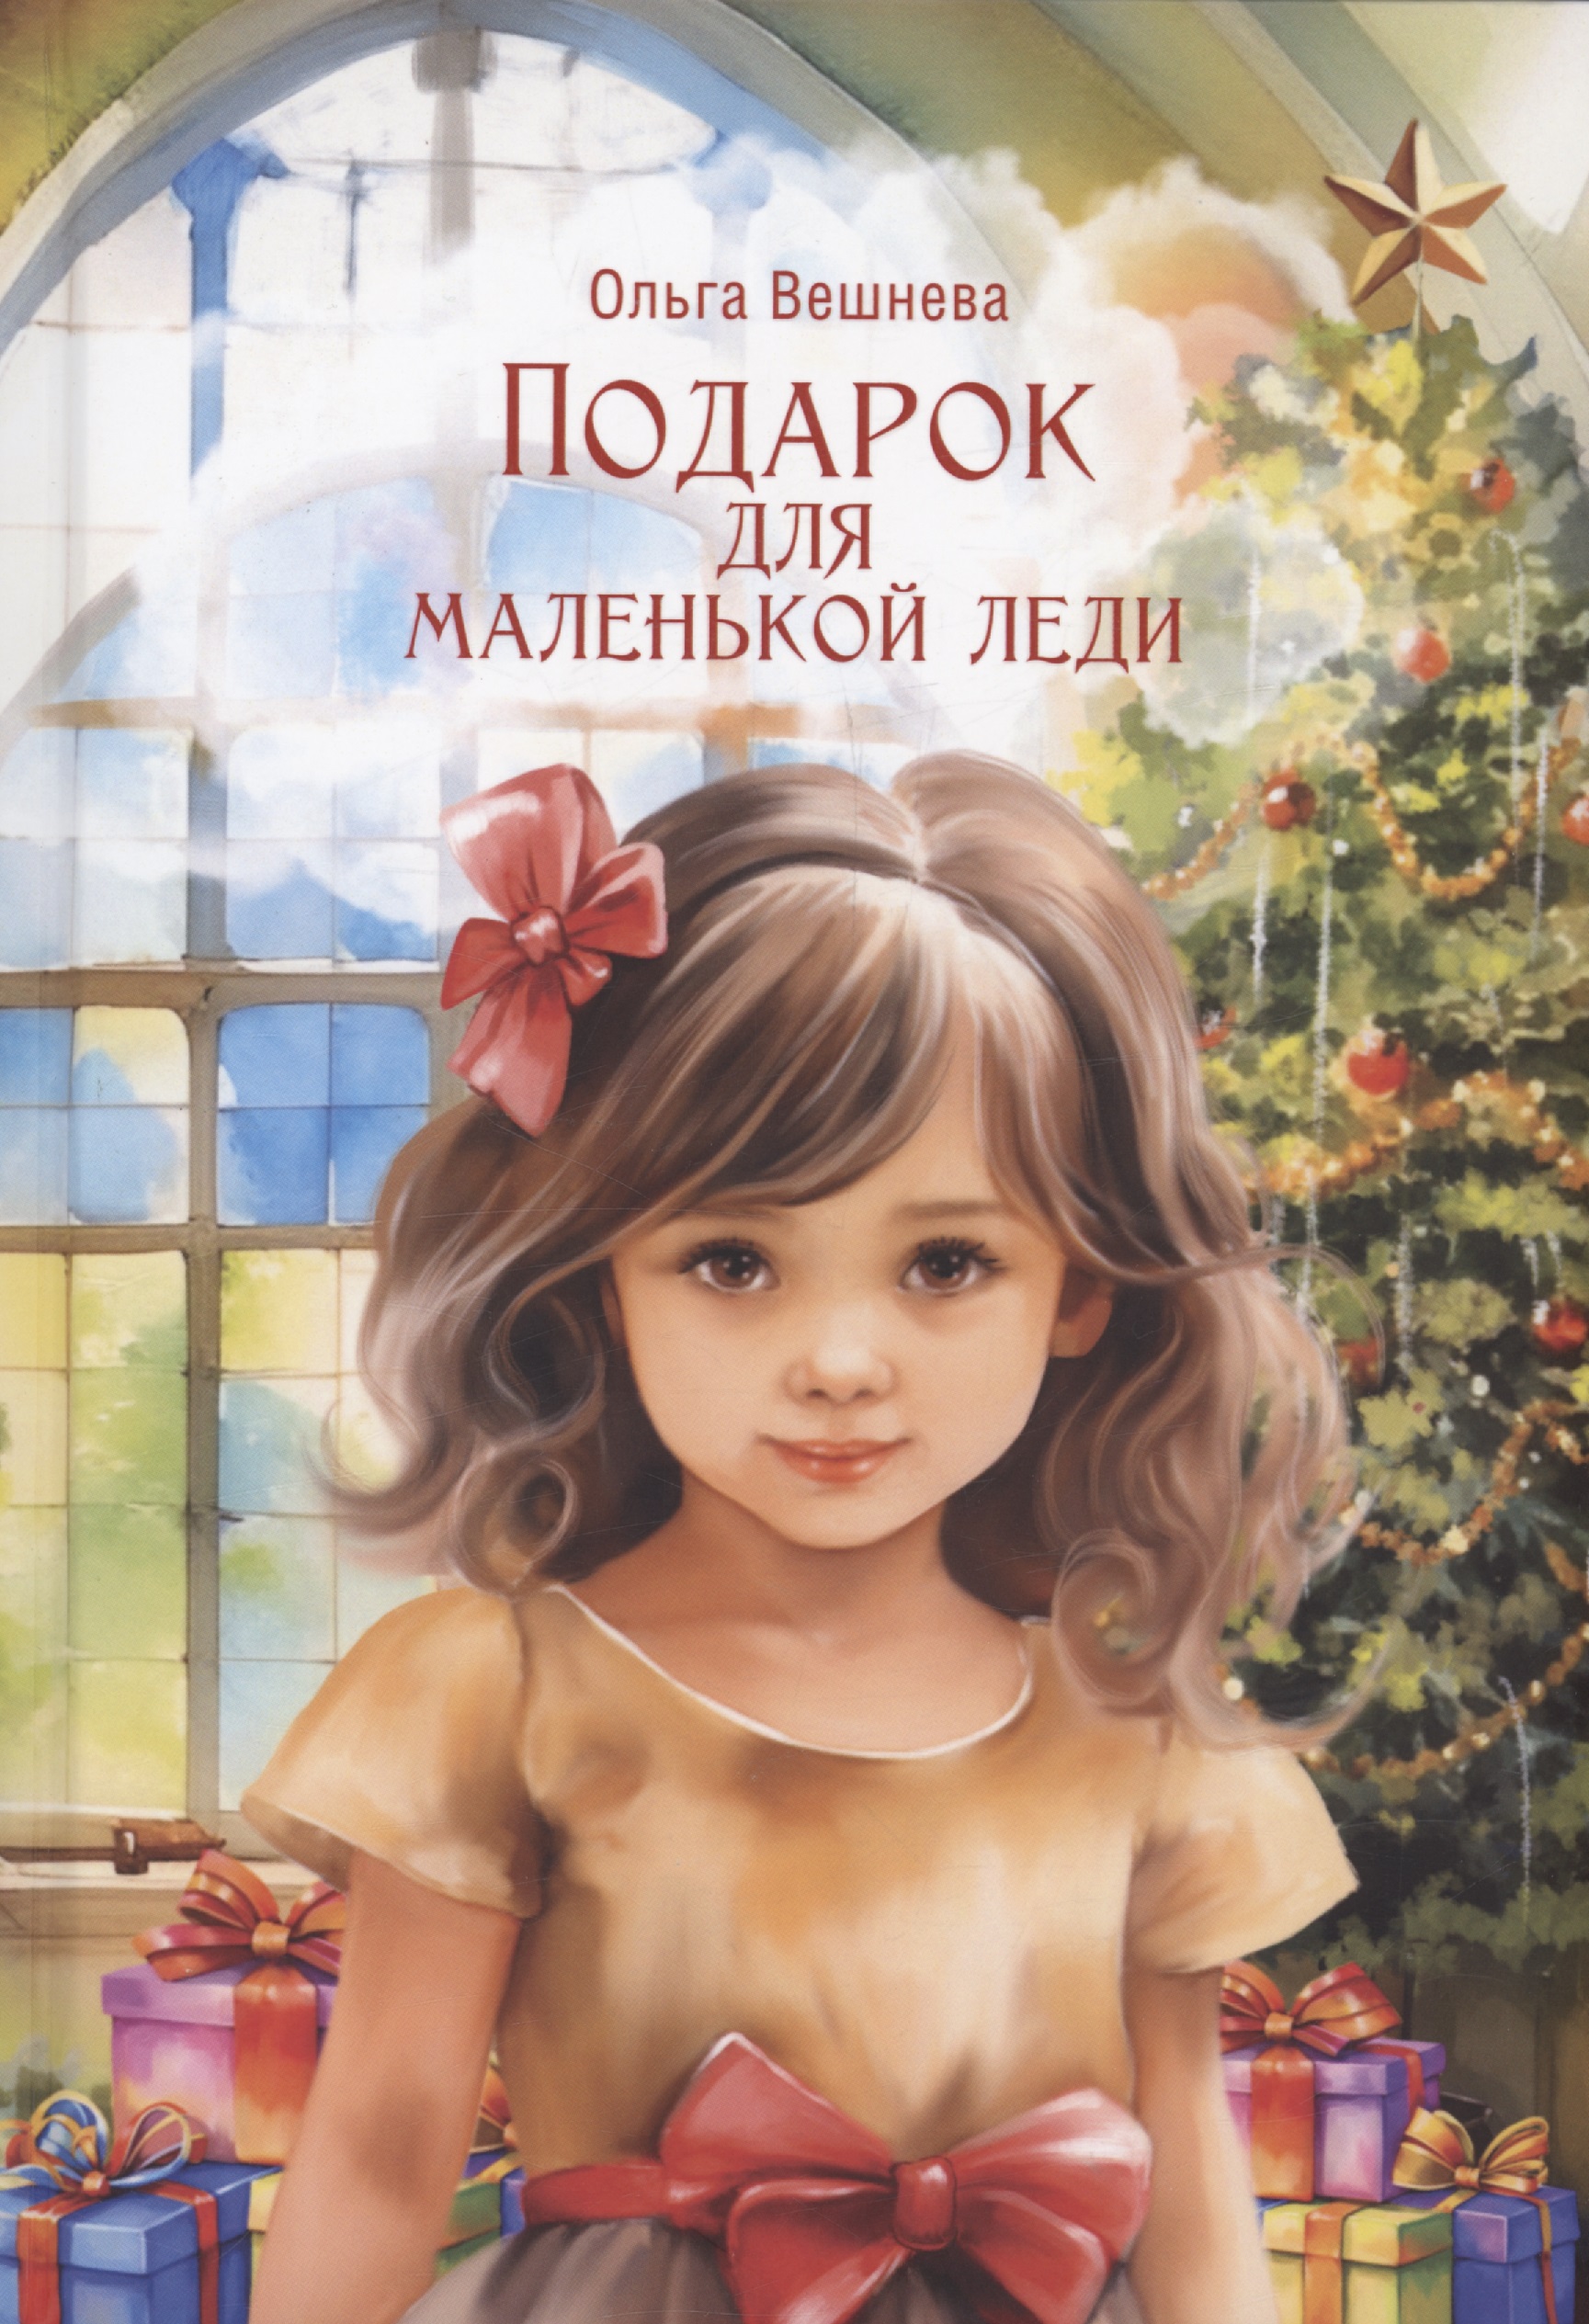 Вешнева Ольга - Подарок для маленькой леди